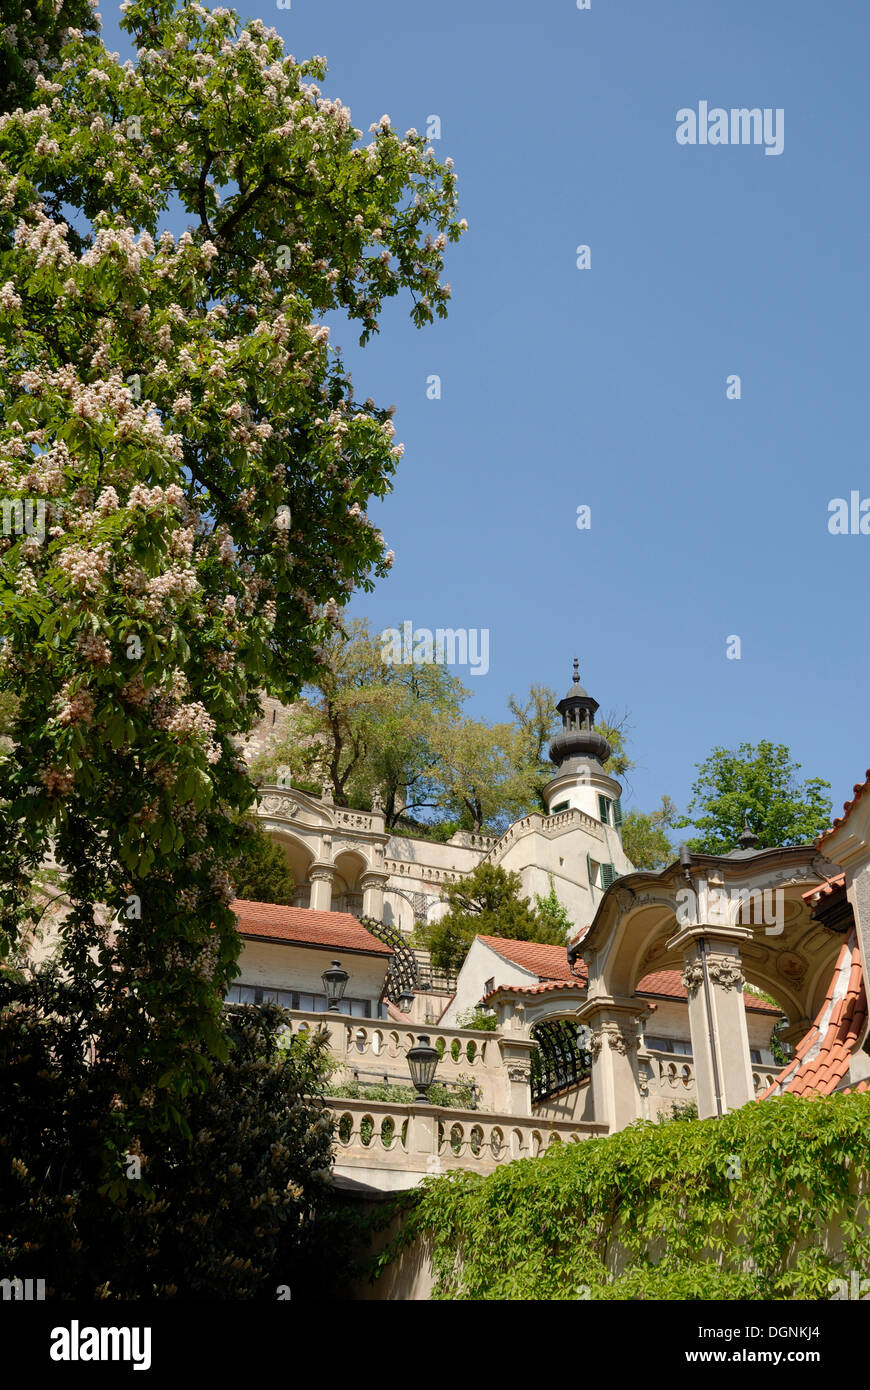 Blühende Rosskastanie Bäume in einem Park, Prag, Tschechische Republik, Europa Stockfoto